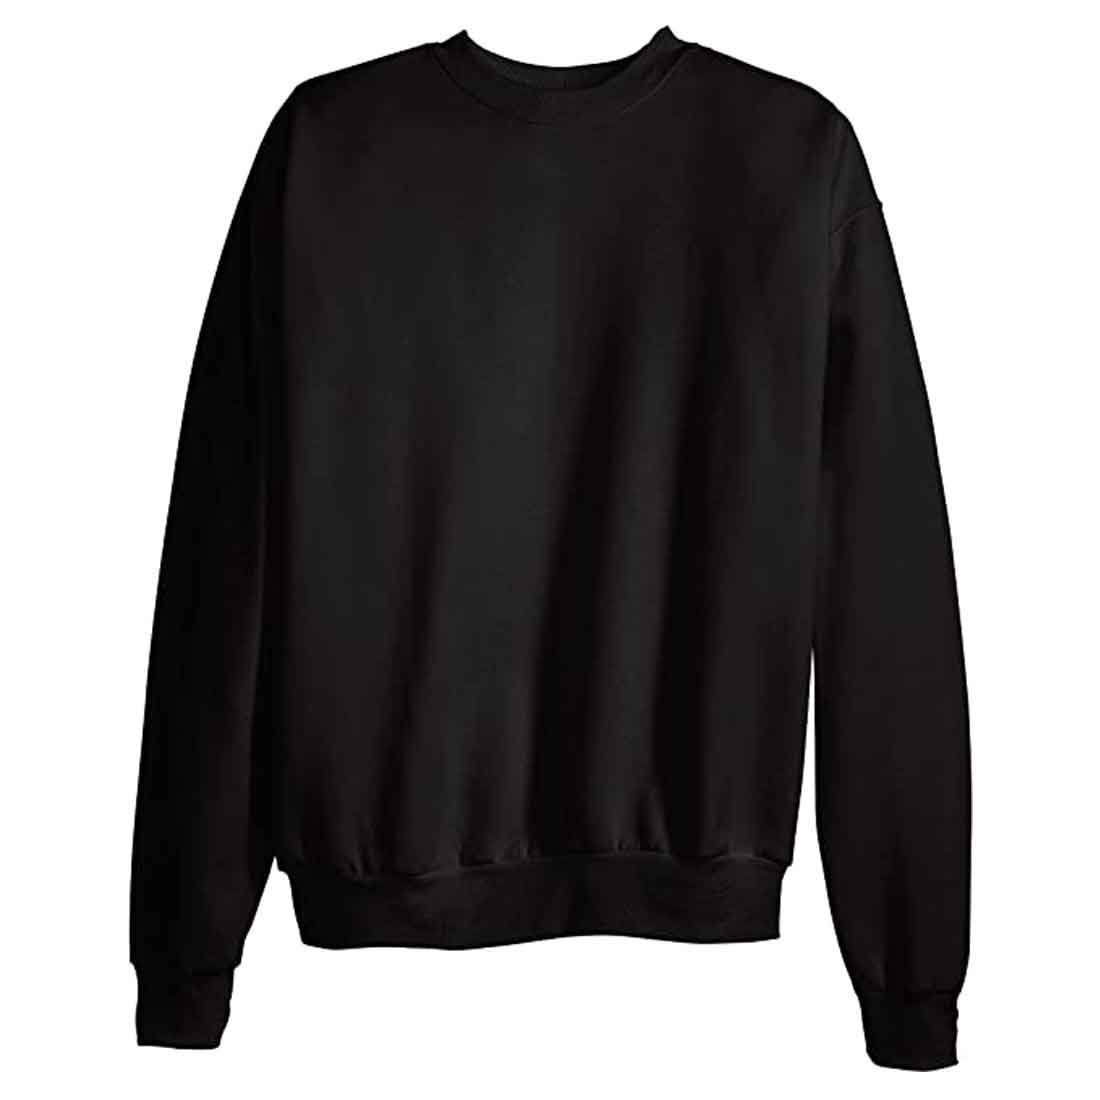 Black Sweatshirt Printed Full Sleeves for Men - Newly Married